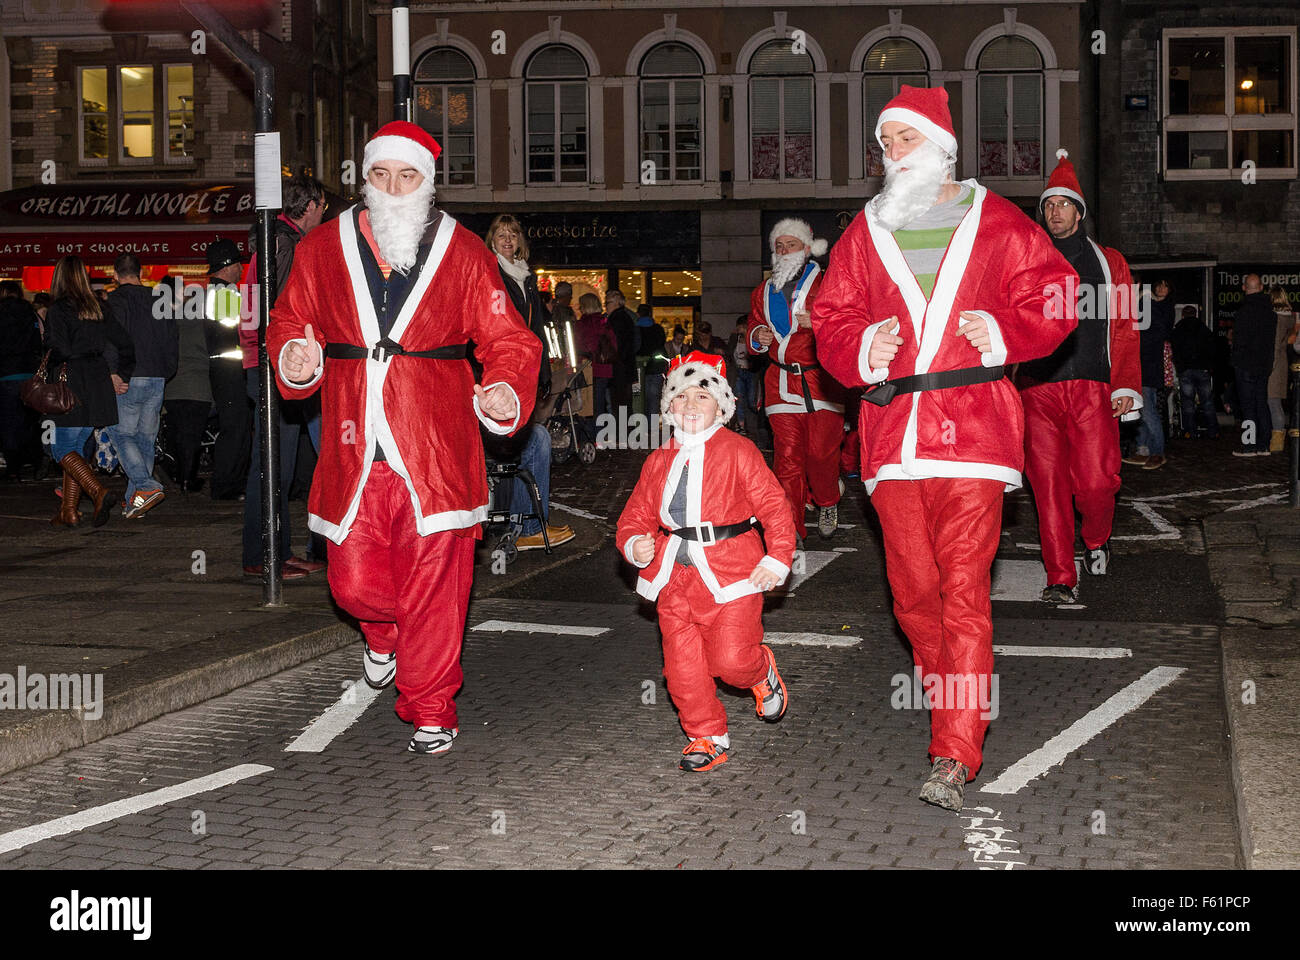 A charity santa fun run in truro, cornwall, uk Stock Photo